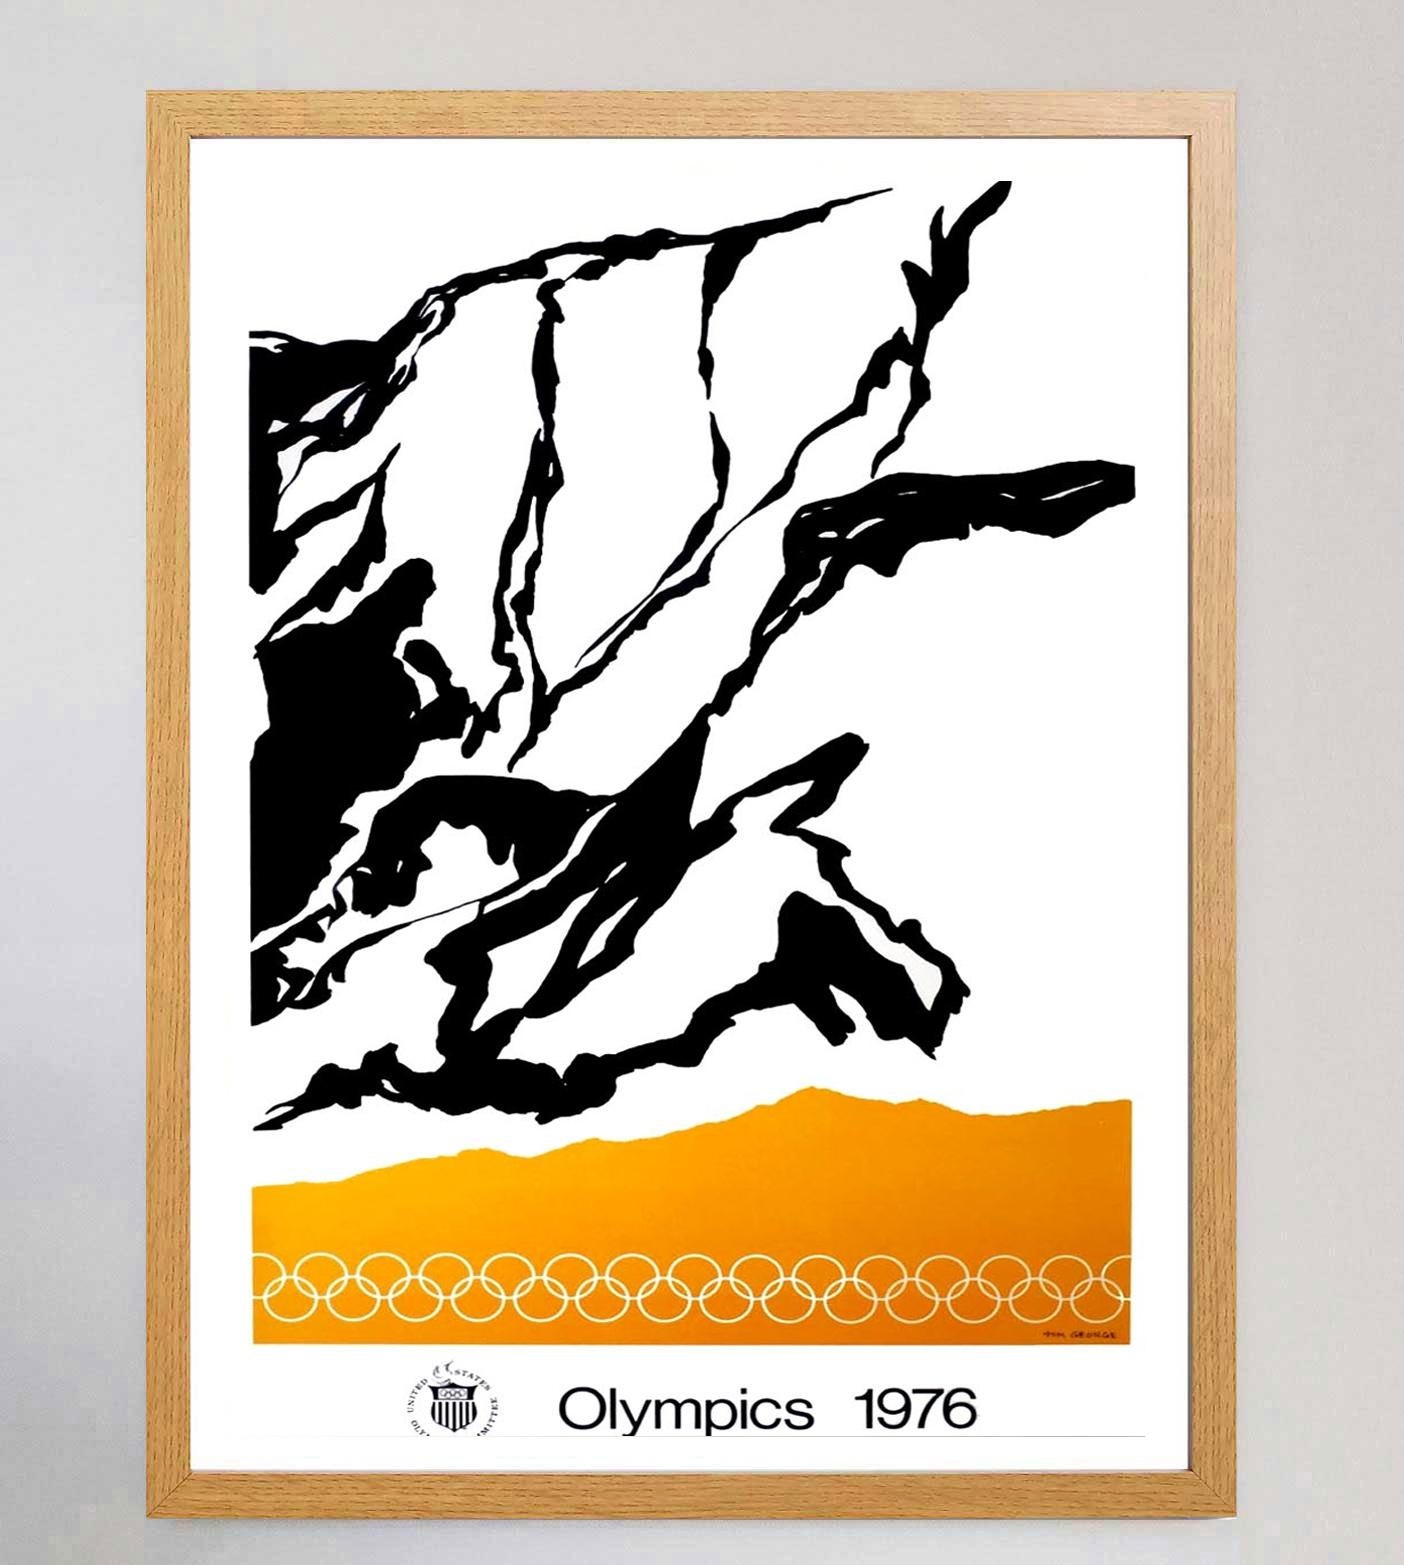 Der amerikanische Künstler Tom George war einer von mehreren Künstlern, die mit der Gestaltung von Kunstpostern für die Olympischen Sommerspiele 1976 in Montreal beauftragt wurden. Die Spiele, die ersten und einzigen Sommerspiele, die in Kanada